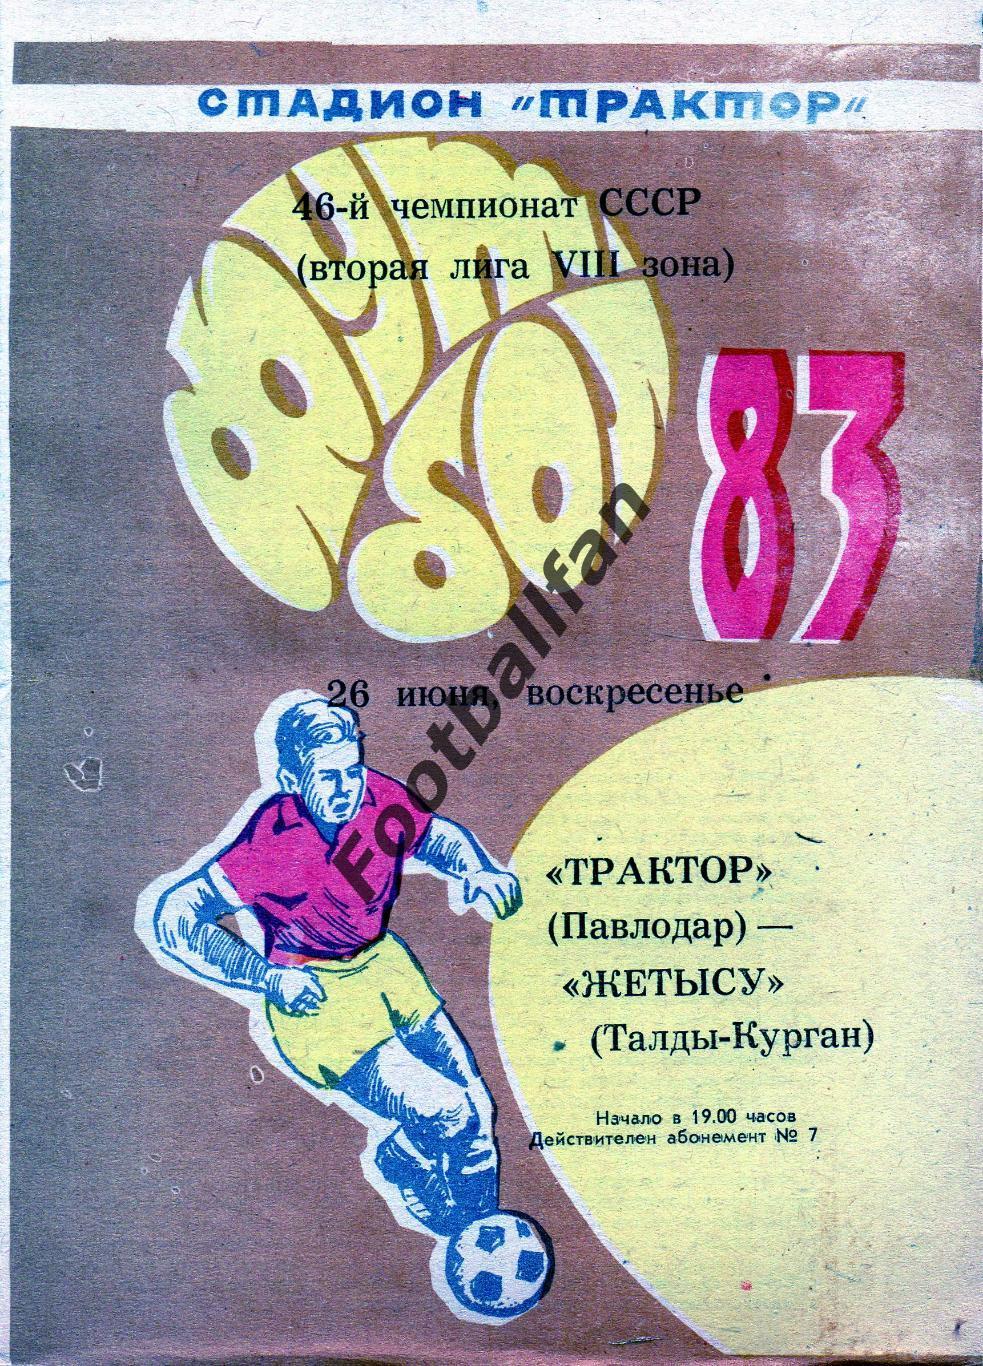 Трактор Павлодар - Жетысу Талды Курган 26.06.1983